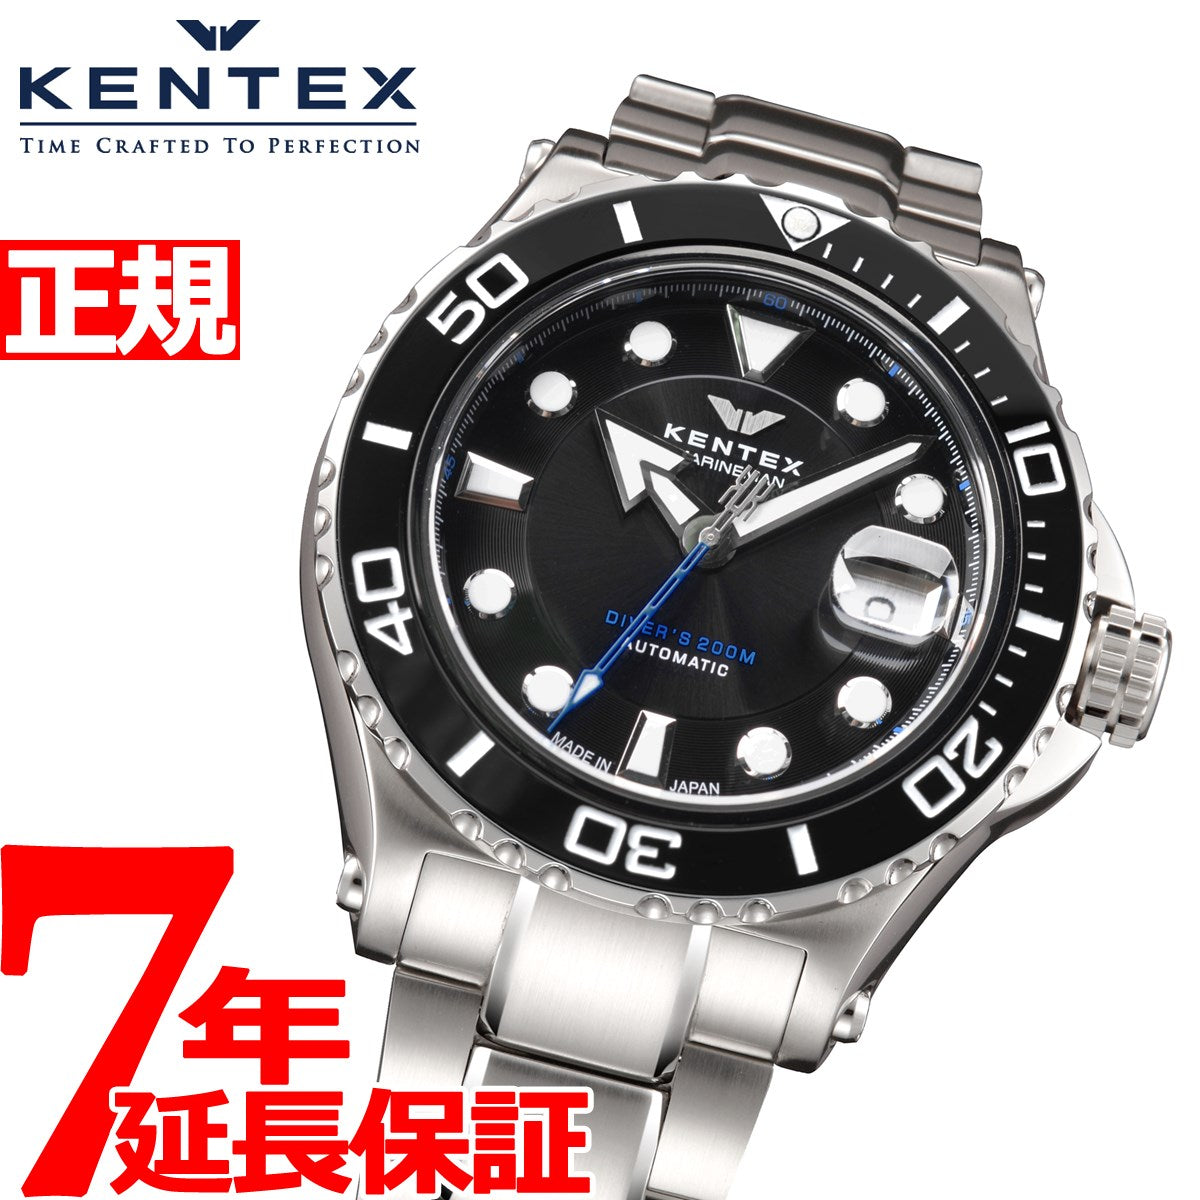 限定 ケンテックス Kentex マリンマン 腕時計 メンズ S706M-16 - 時計